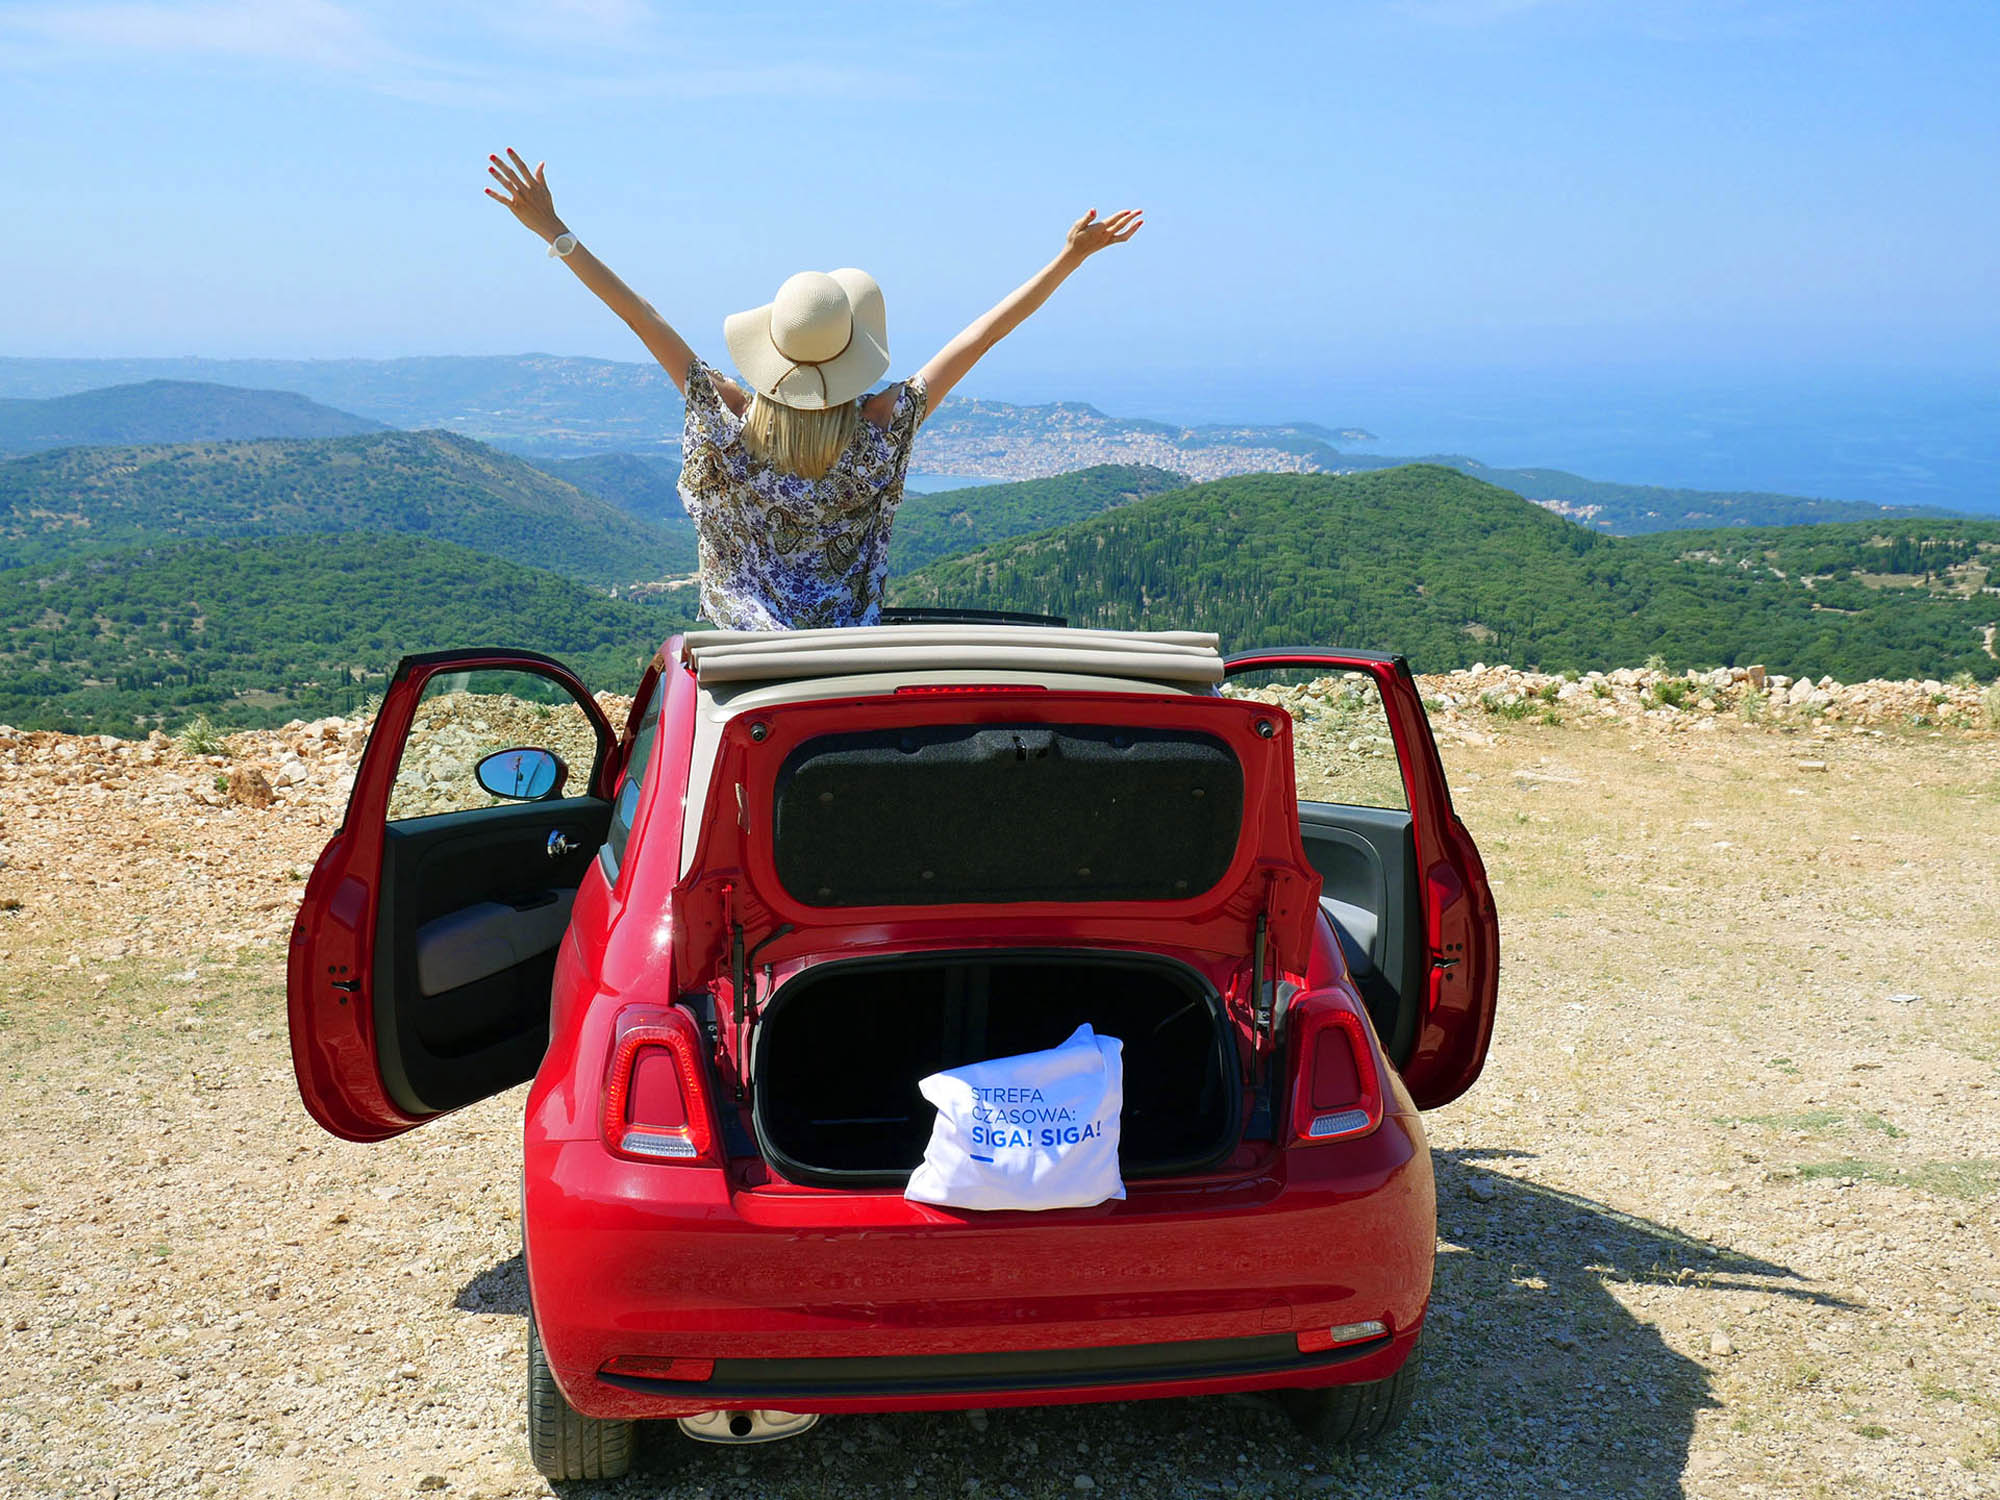 osoba w samochodzie na wycieczce w Grecji, patrzy na piękną, grecką panoramę ze wzgórza